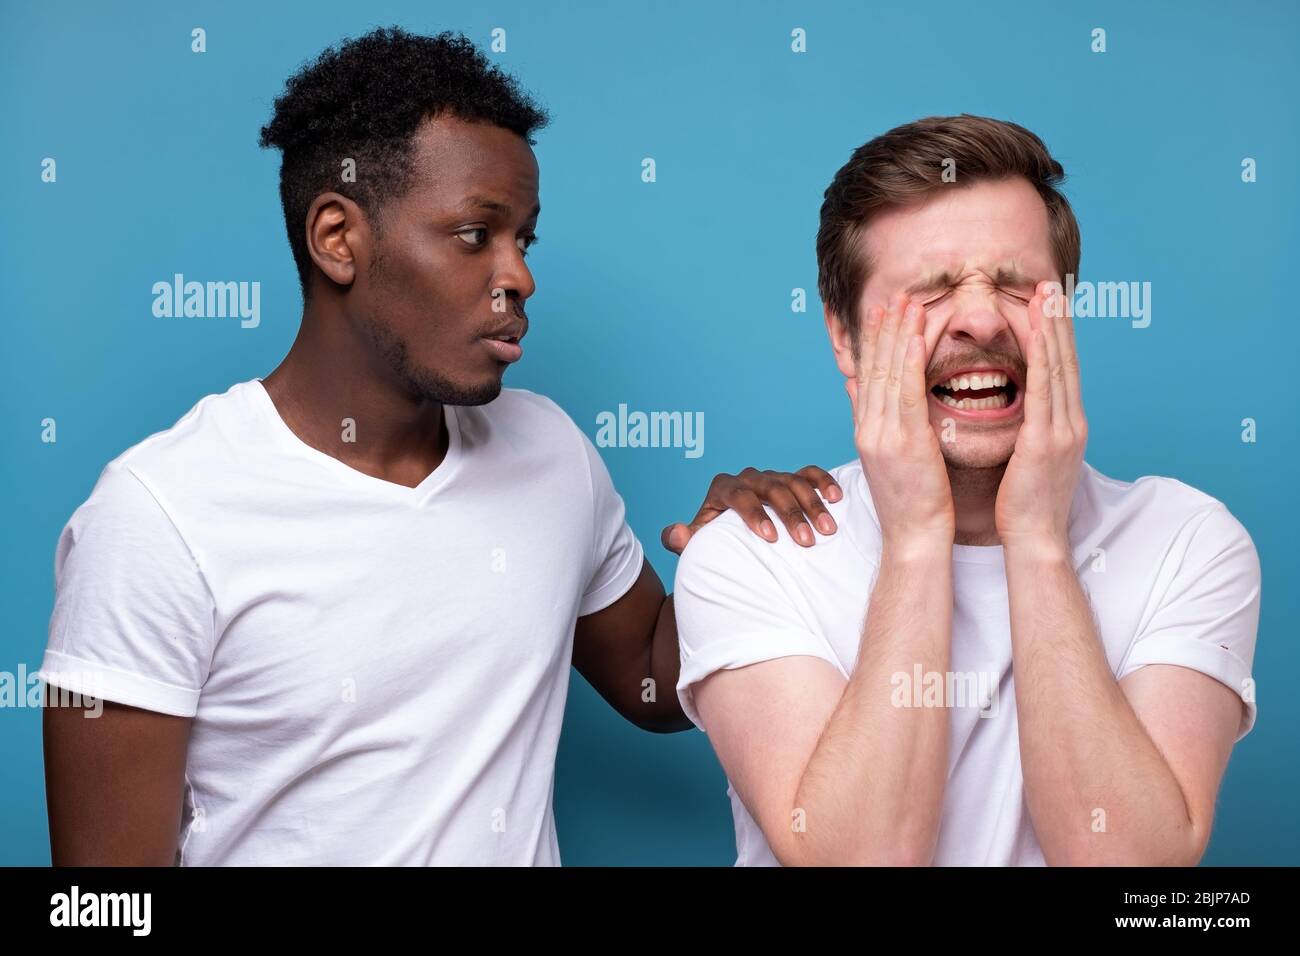 afroamerikanischer Mann beruhigt seinen Kollegen oder Freund, der Probleme hat, miserable Gesichtsausdrücke, die Hände auf seinen Schultern hält, steht eng Stockfoto